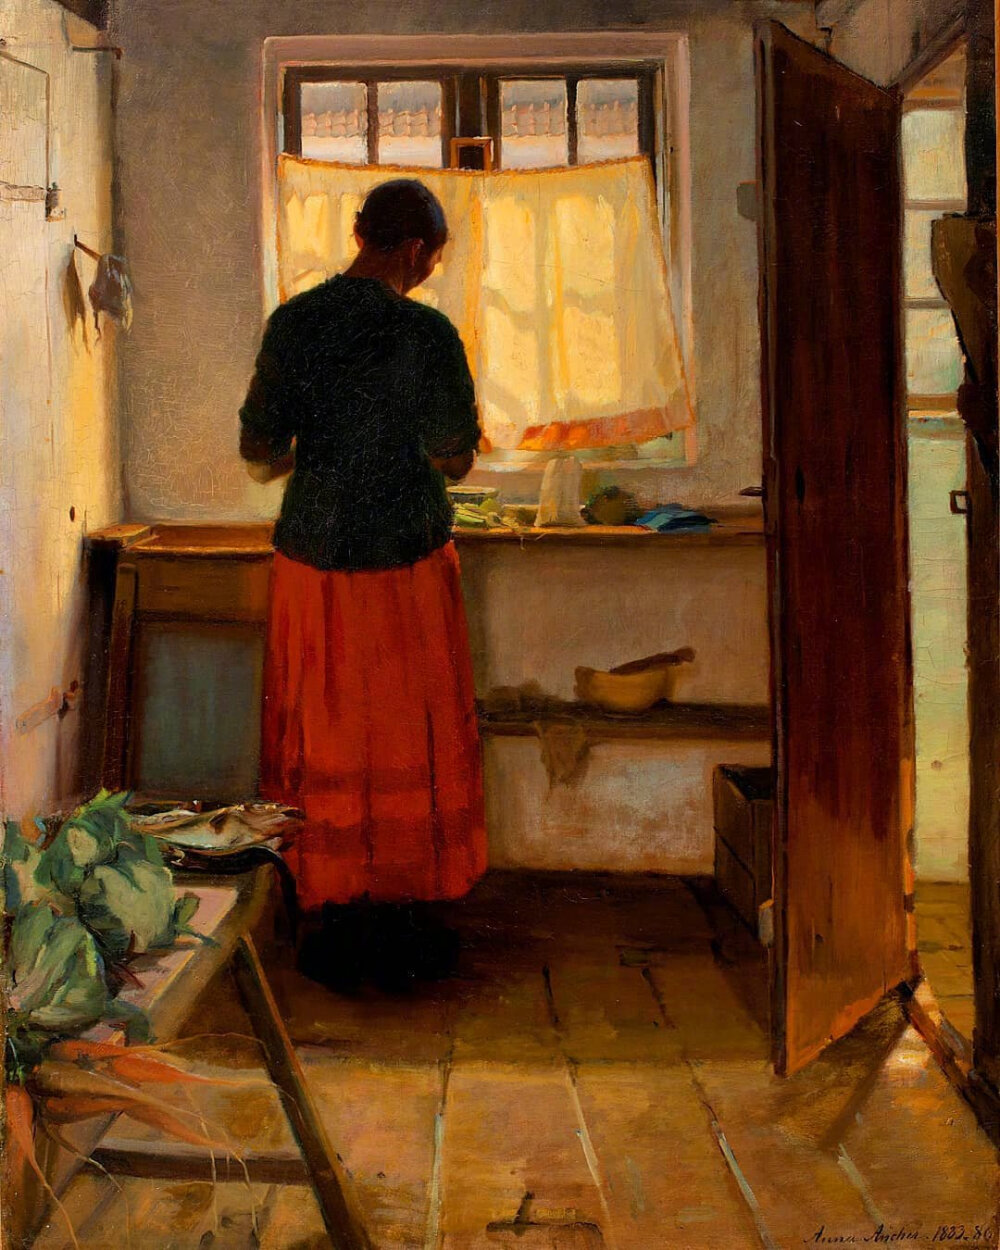 安娜·安彻（Anna Ancher，1859-1935）丹麦印象派女性画家，斯卡恩（Skagen）
画派代表人物，也是唯一来自本地的斯卡恩画家社团成员。作品多以北欧海滨城市的家庭日常生活为主题，她在作品中不断创新光色运用和构图布局。
她的丈夫迈克尔·安彻（Michael Ancher，1849-1927）也是丹麦著名画家，安娜是斯卡恩一家酒店老板的女儿，迈克尔是她的家庭教师，两人因绘画相识相恋。后来，安娜的声望超过了迈克尔。
安娜·安彻被认为是丹麦艺术的代表，是丹麦的骄傲，她和丈夫的画像被印在丹麦最大面值货币1000克朗上面。